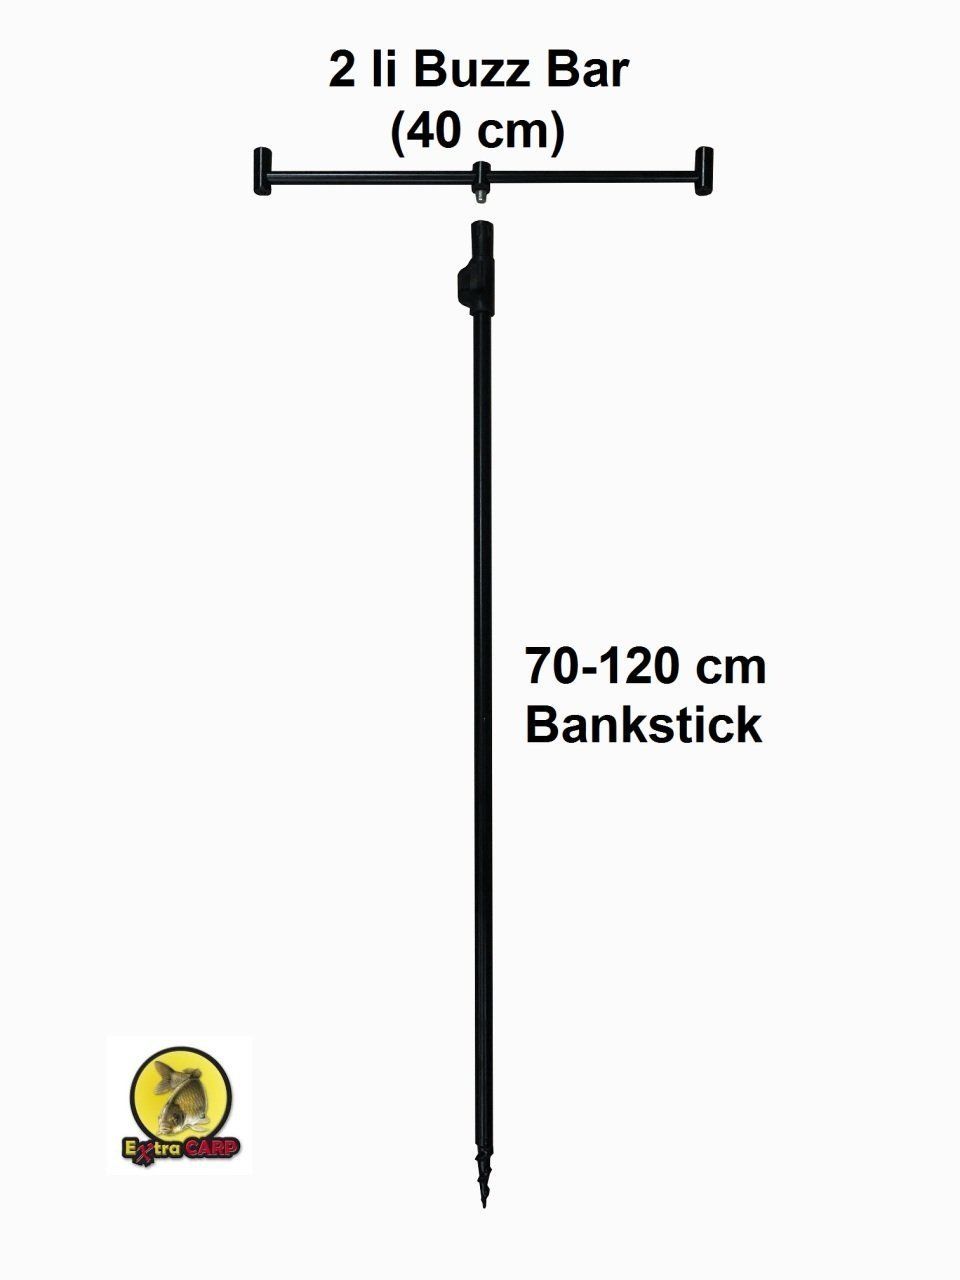 Bank Stick - Buzz Bar Dayama